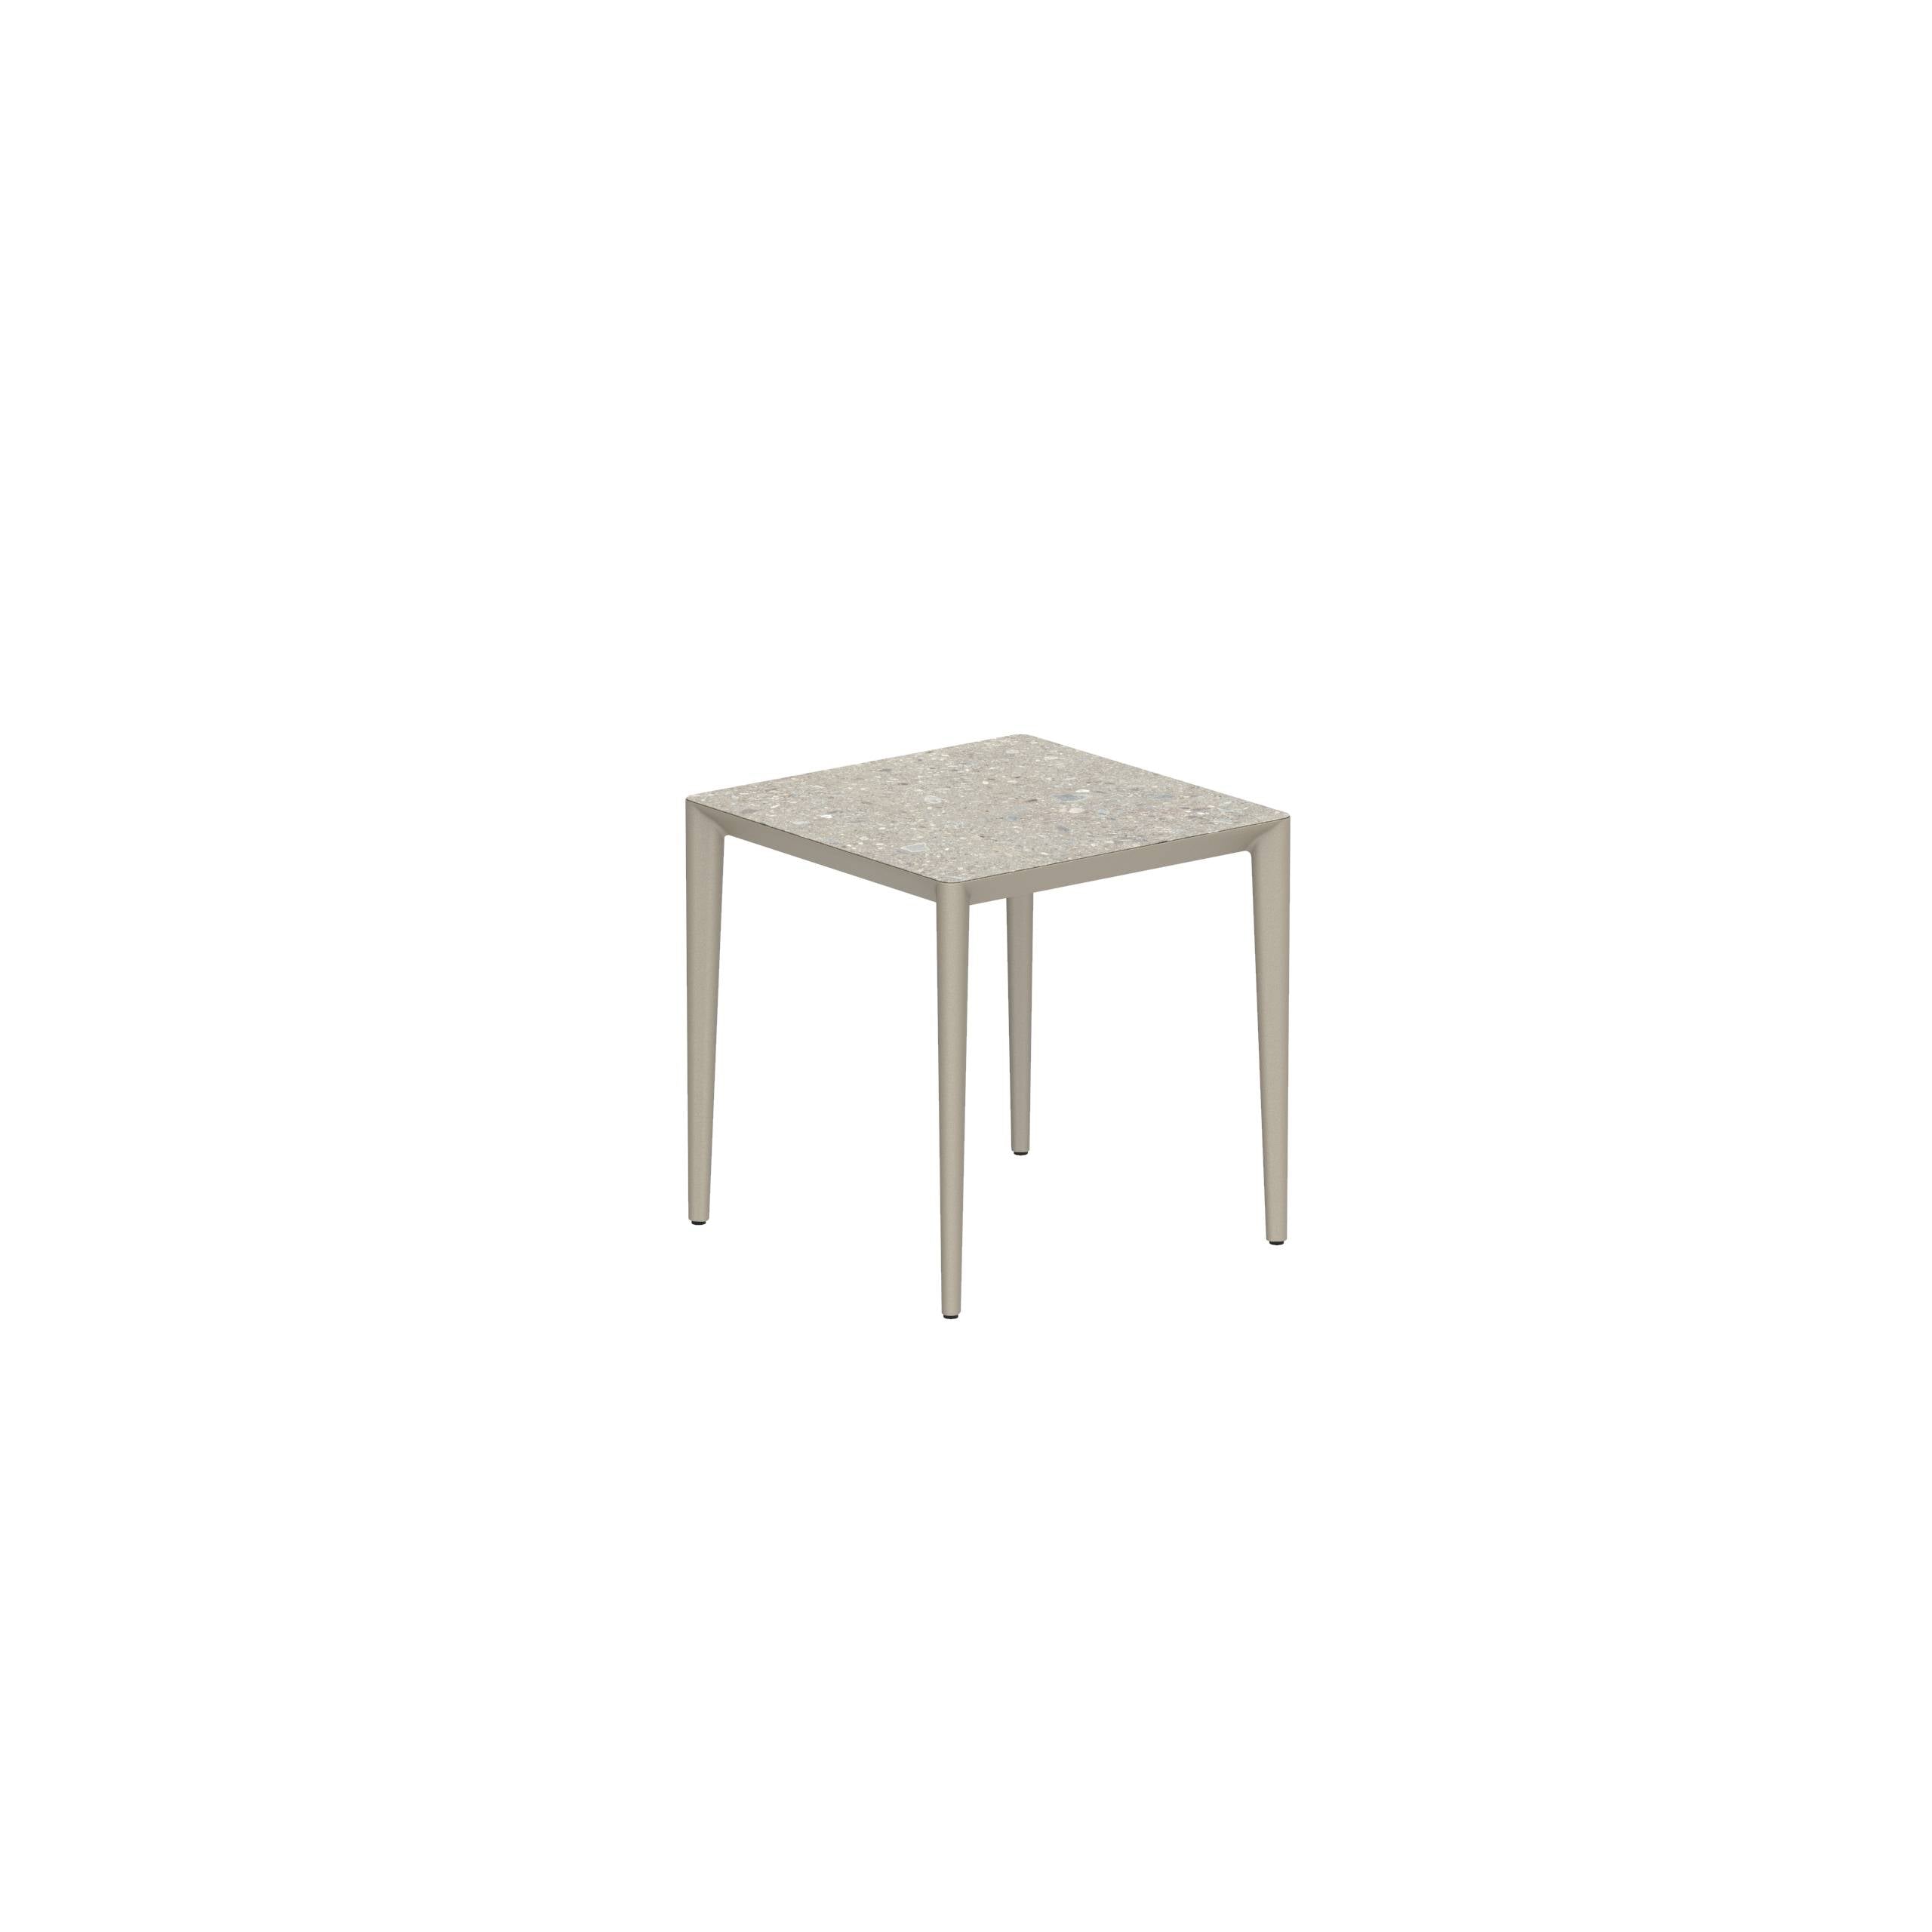 U-Nite Table 74x74cm Sand With Ceramic Tabletop In Ceppo Dolomitica